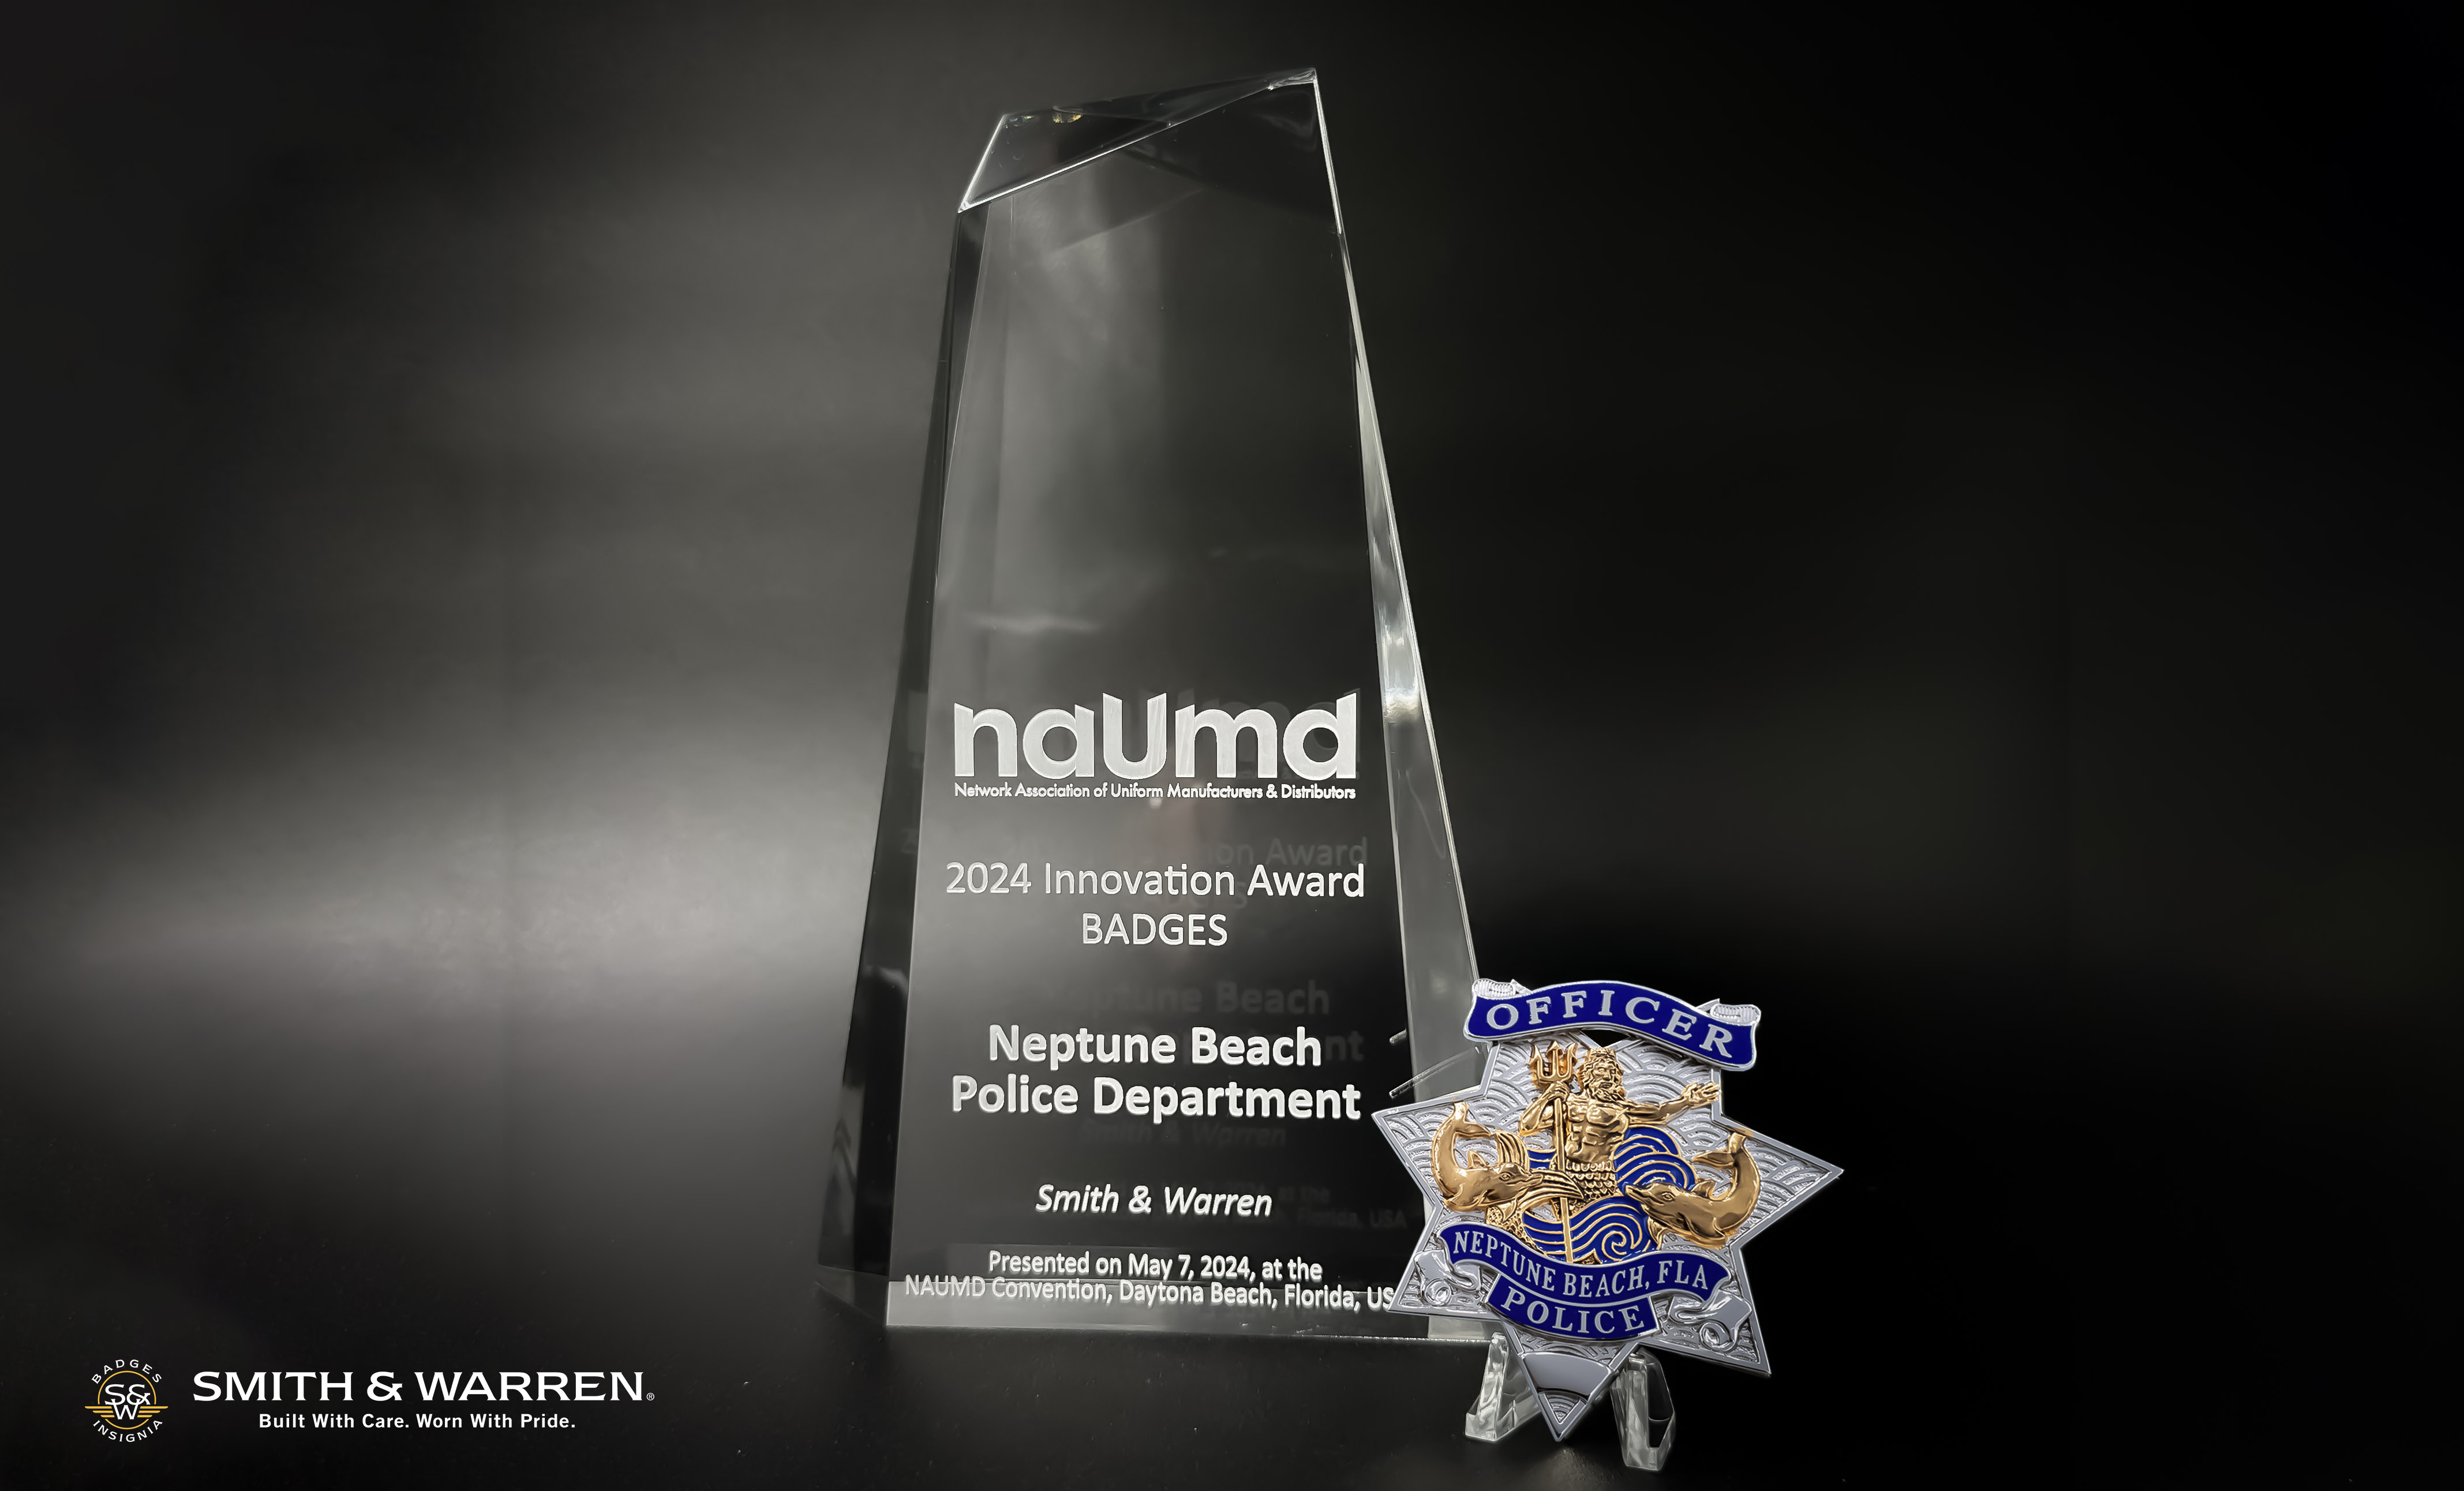 NAUMD Award winning badge Neptune Beach Police